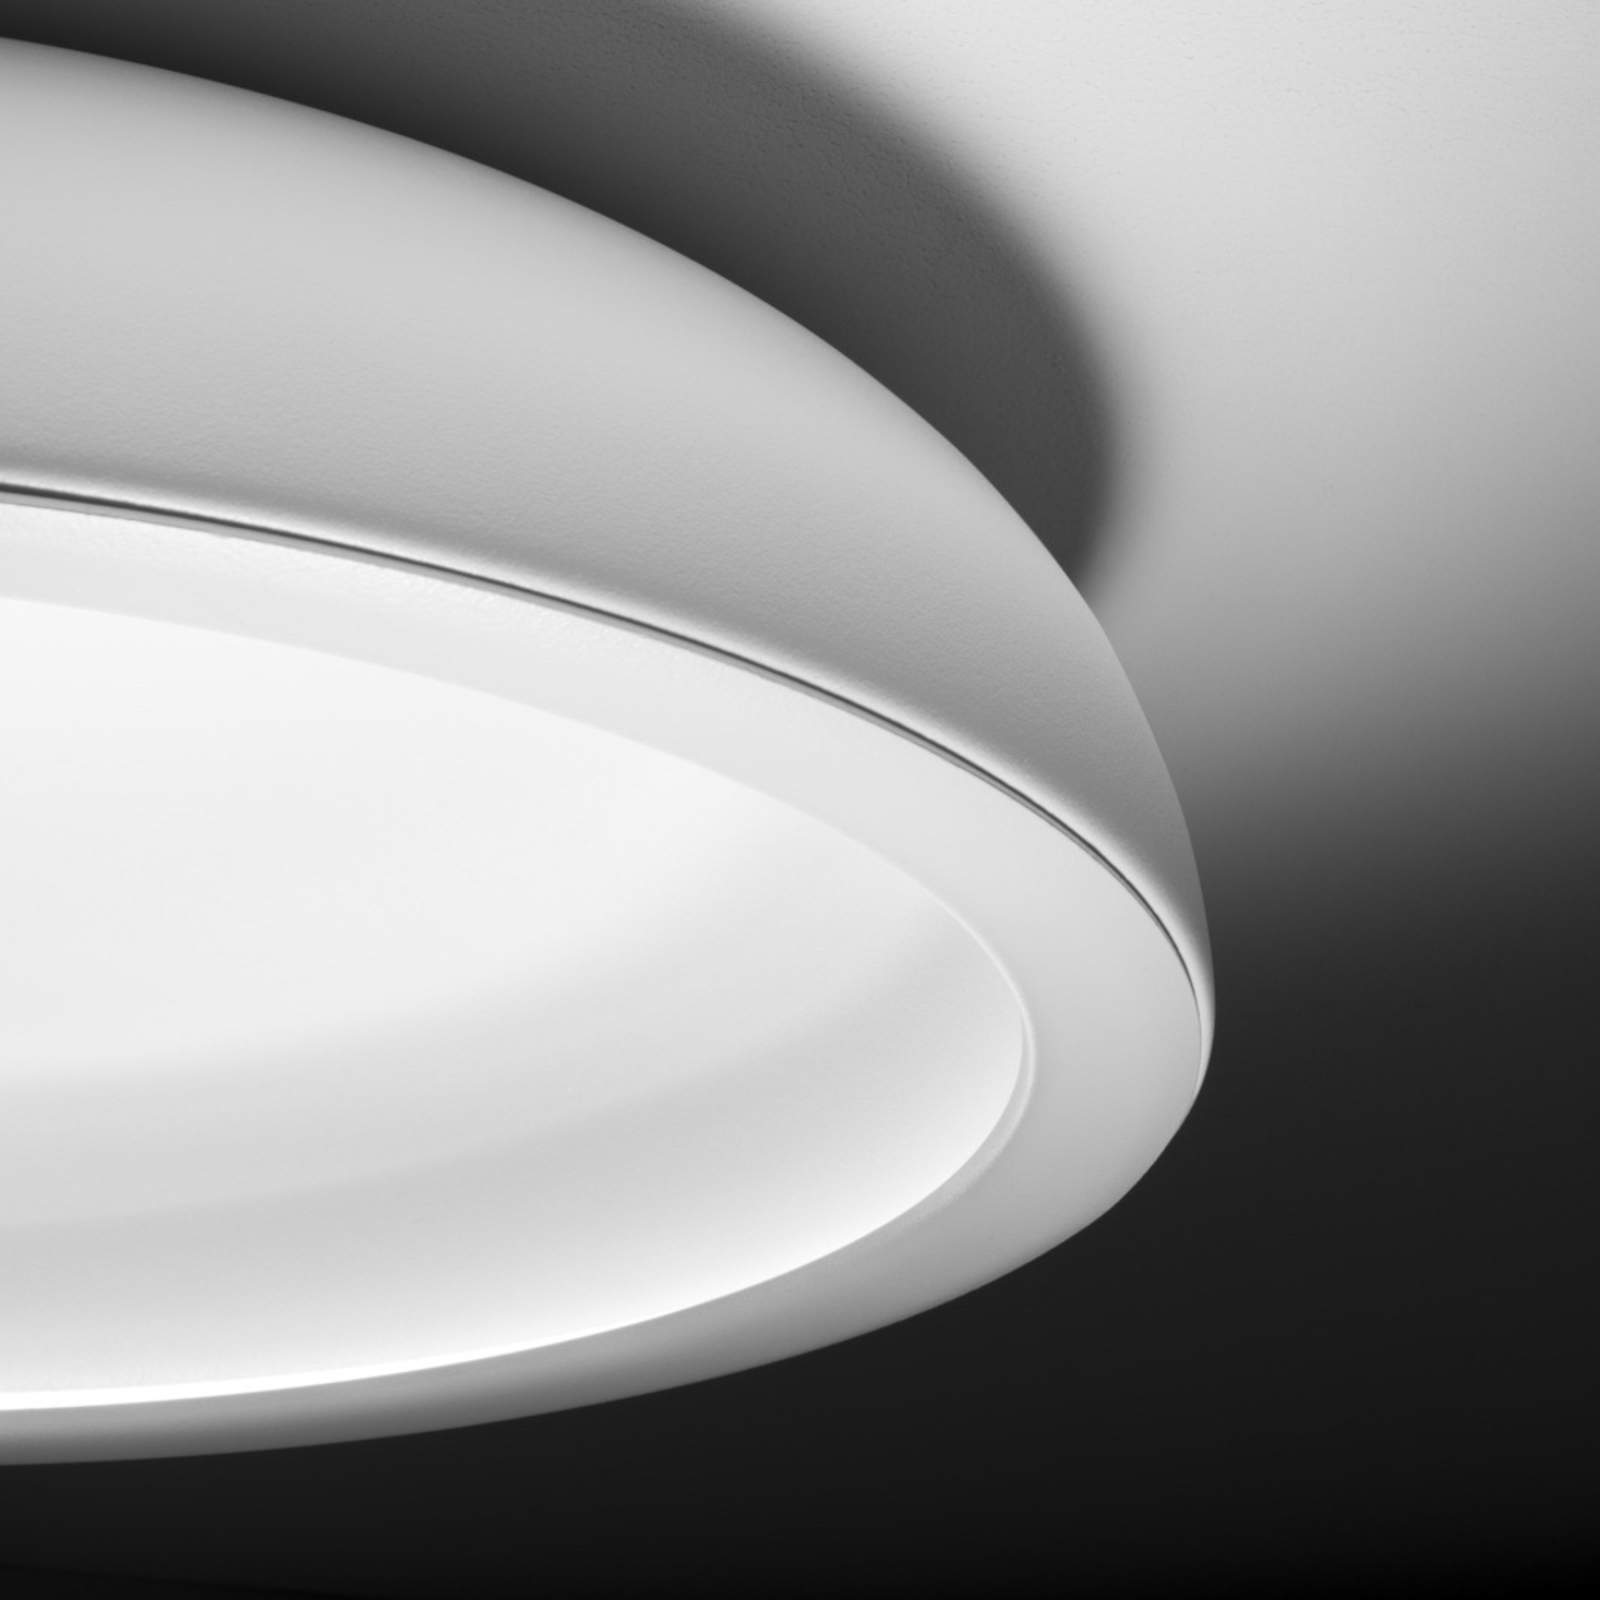 Stilnovo Reflexio LED-Deckenleuchte, Ø65cm weiß